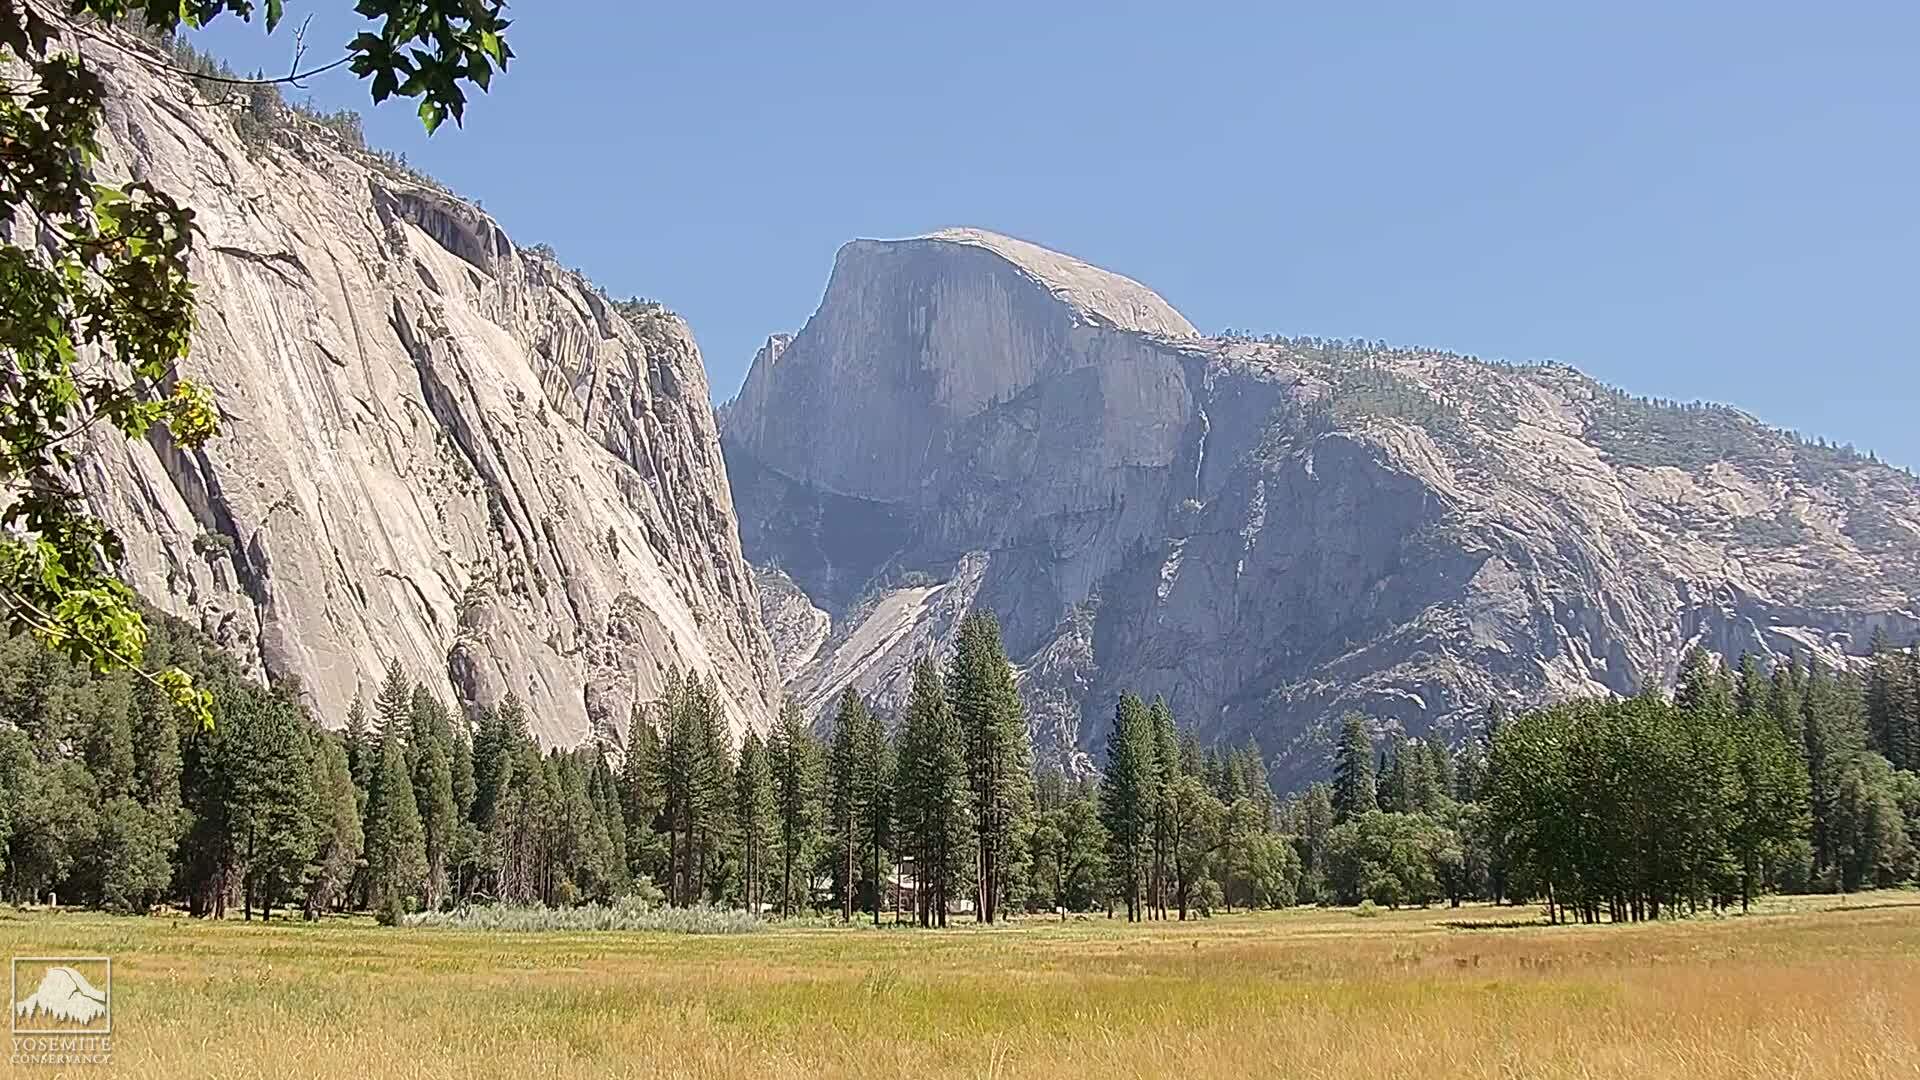 Webcam Yosemite National Park California Live Web Cam Views Of